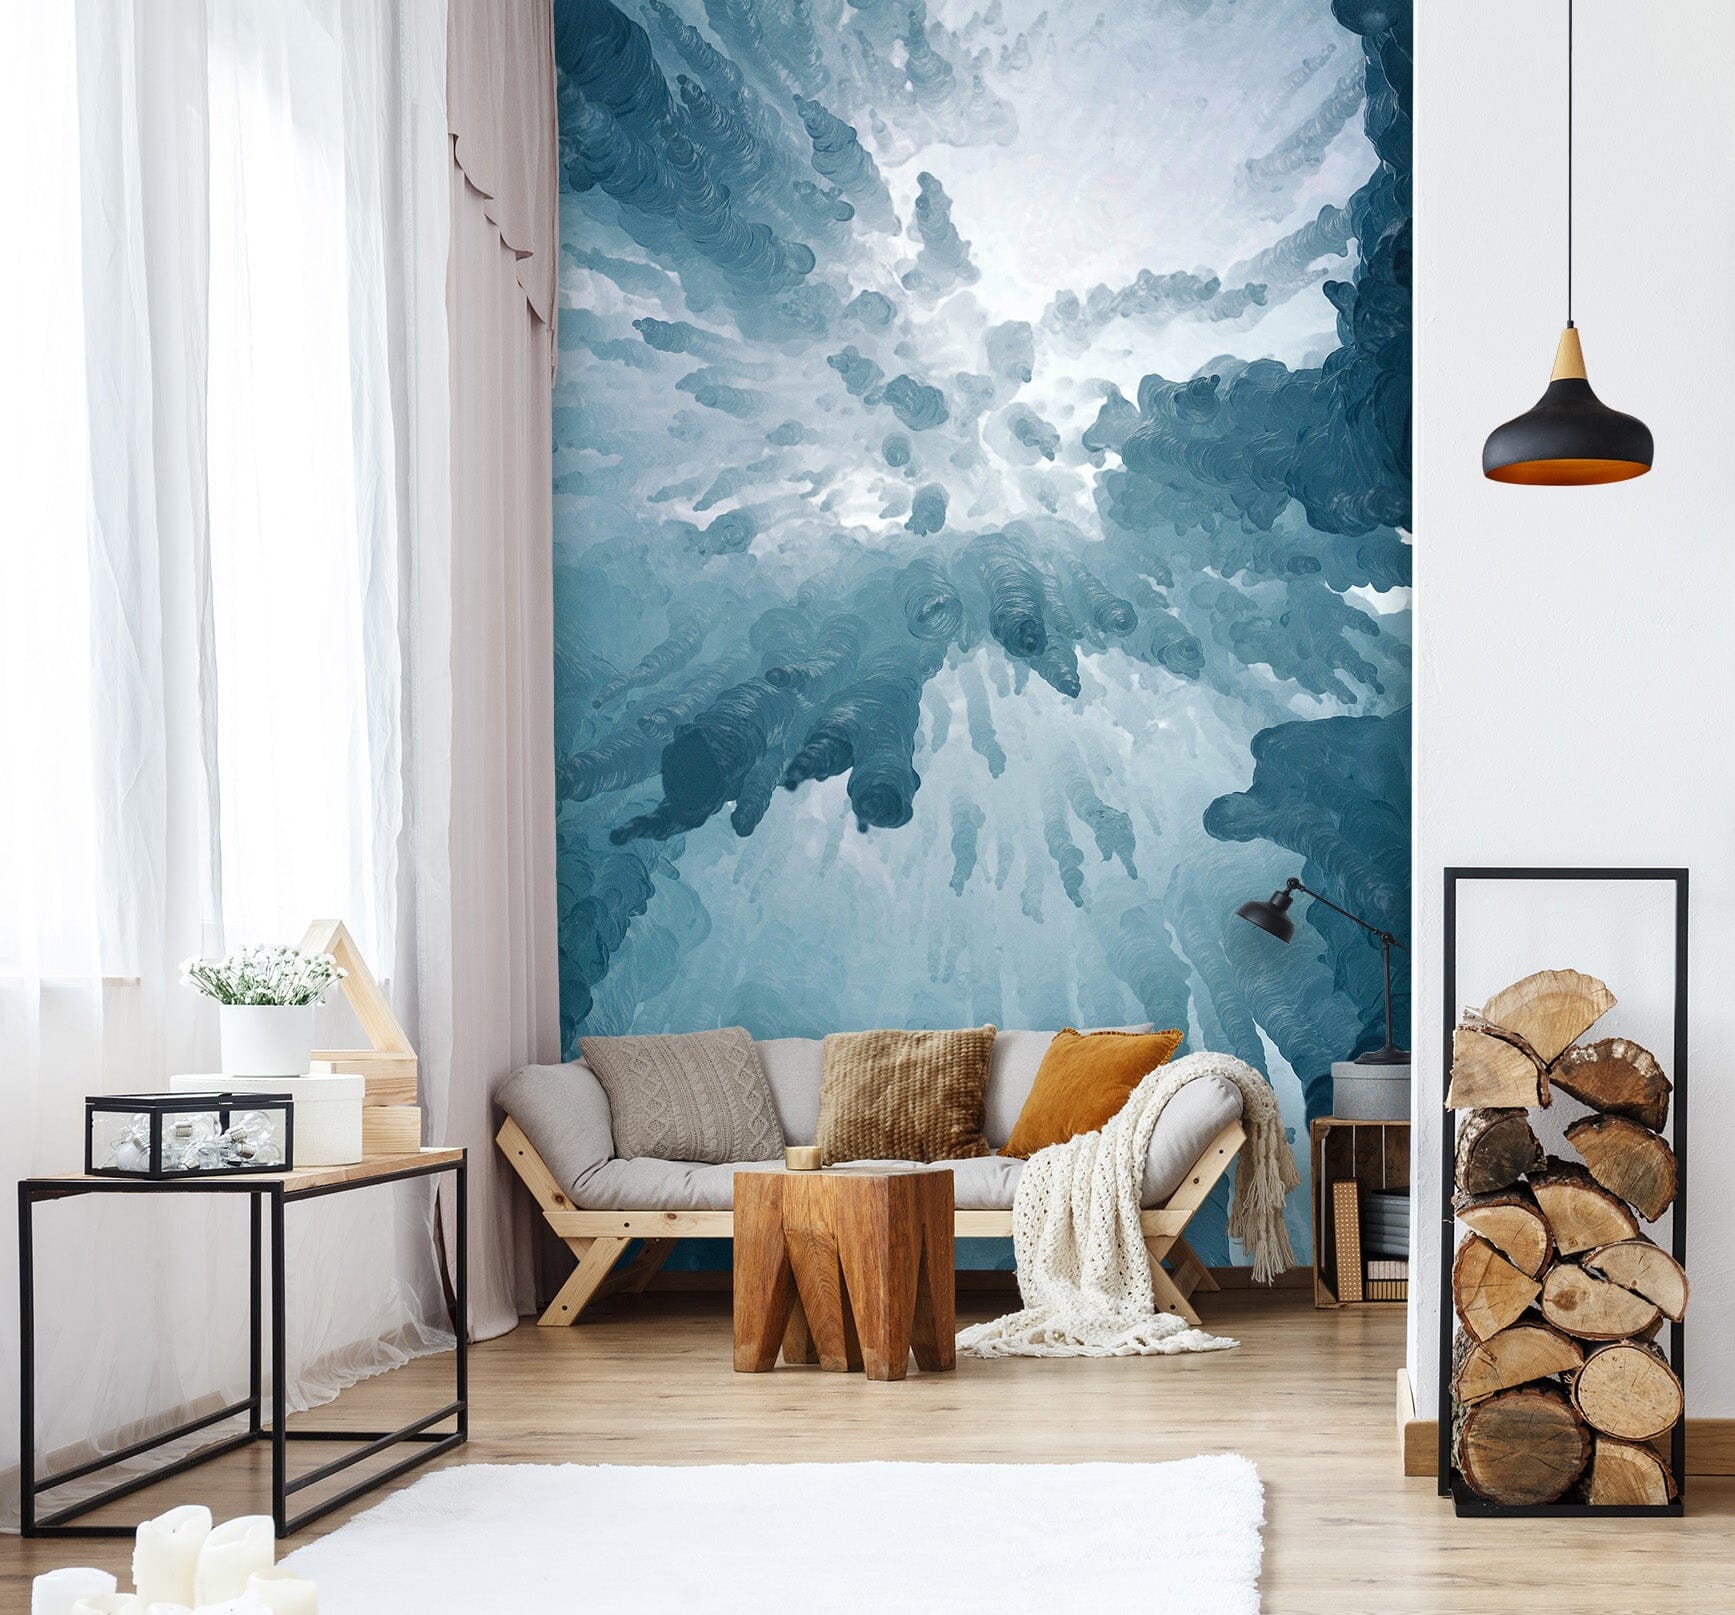 3D Glacier 1549 Wall Murals Wallpaper AJ Wallpaper 2 